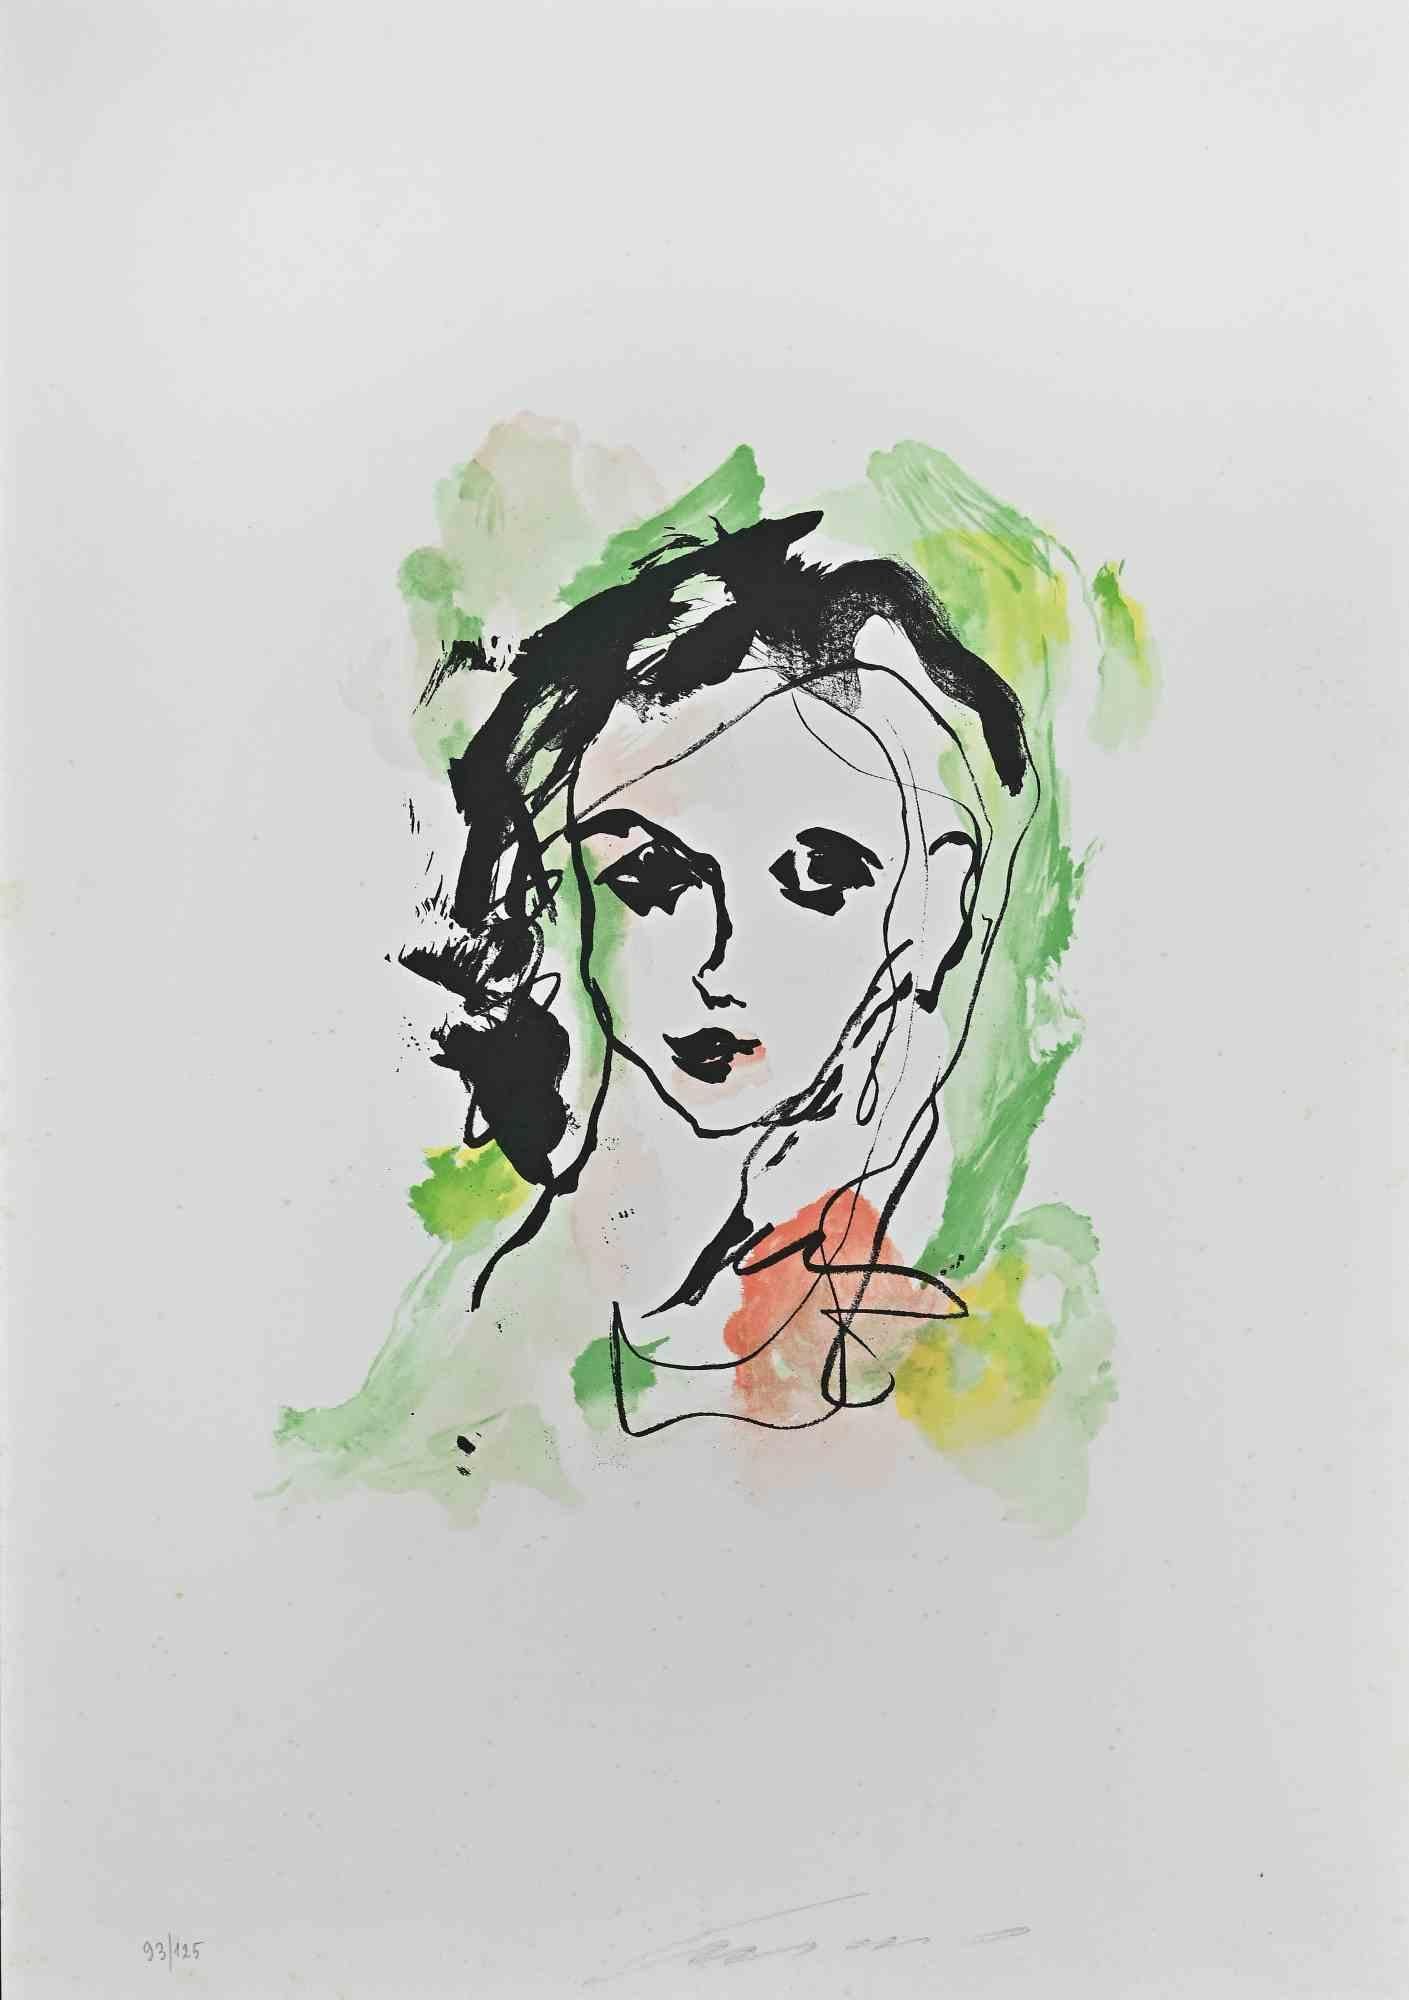 Portrait ist eine Lithographie von Ernesto Treccani aus dem Jahr 1973.

Limitierte Auflage von 125 Stück, Herausgeber "La Nuova Foglio SPA".

Sehr guter Zustand auf einem weißen Karton.

Handsigniert und nummeriert vom Künstler mit Bleistift am